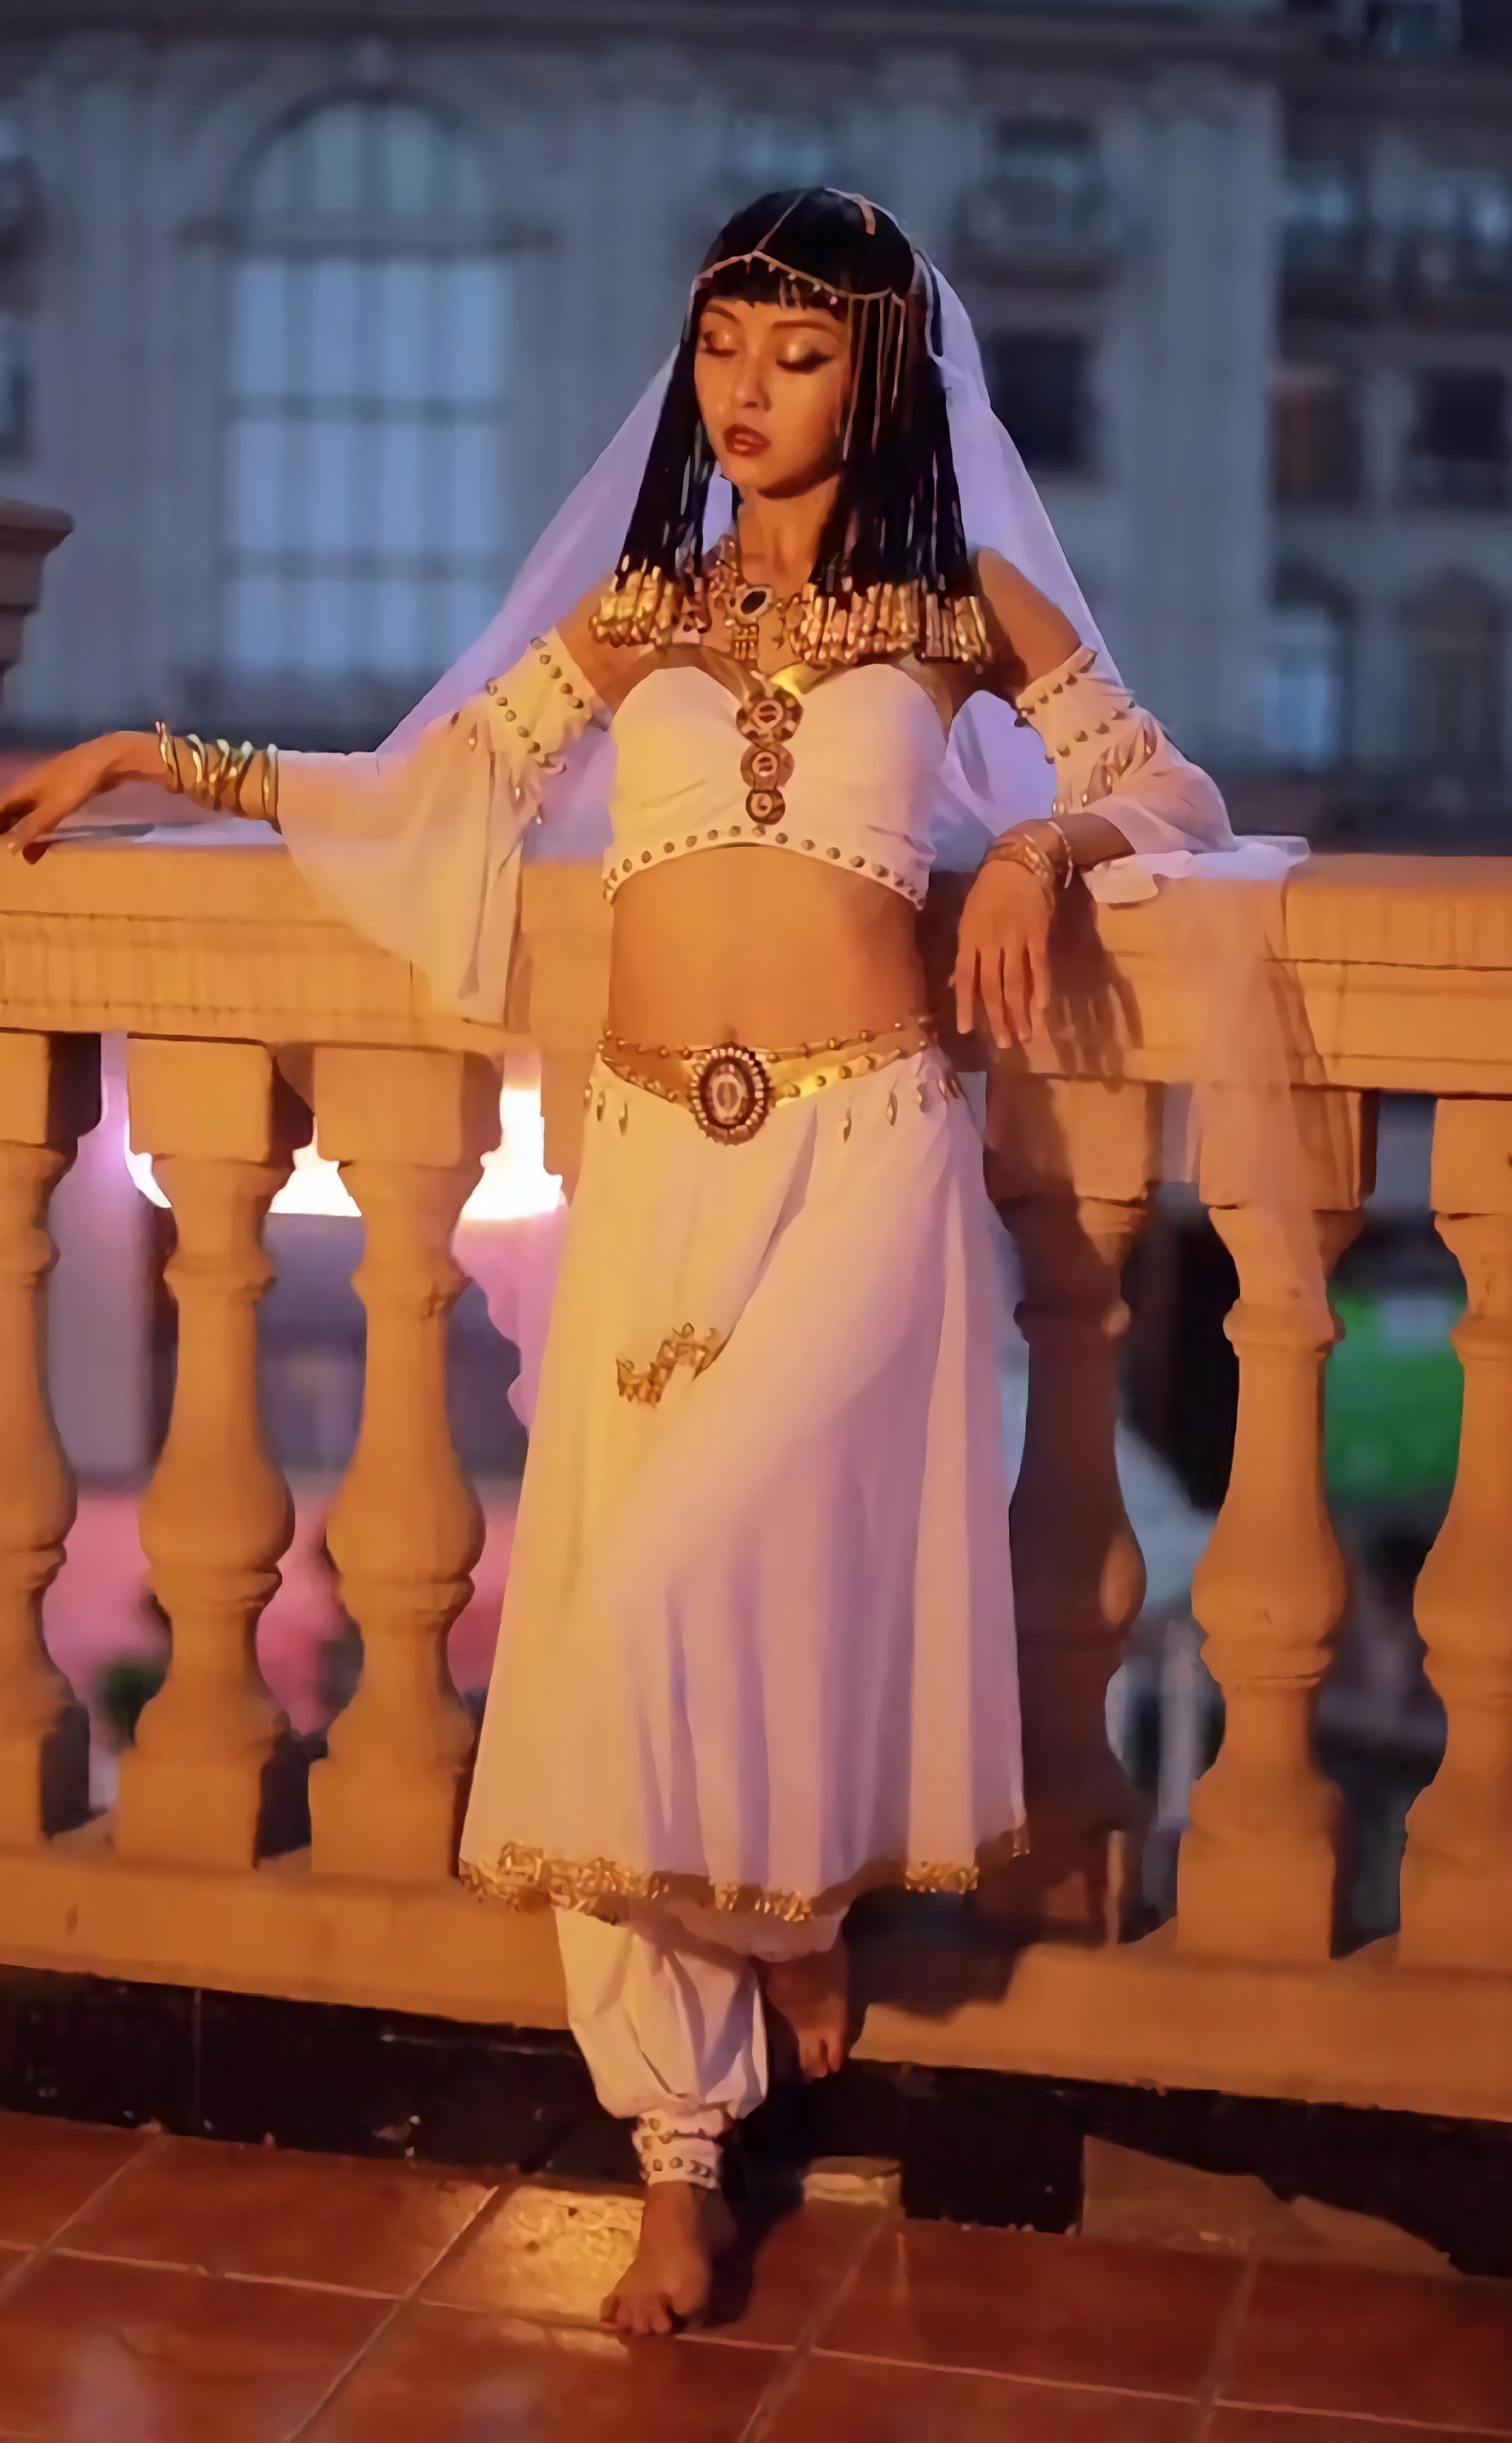 Déesse grecque tenue danse du ventre femmes adulte Cosplay Costume  Halloween carnaval princesse égyptienne Aphrodite Costume danse du ventre -   France